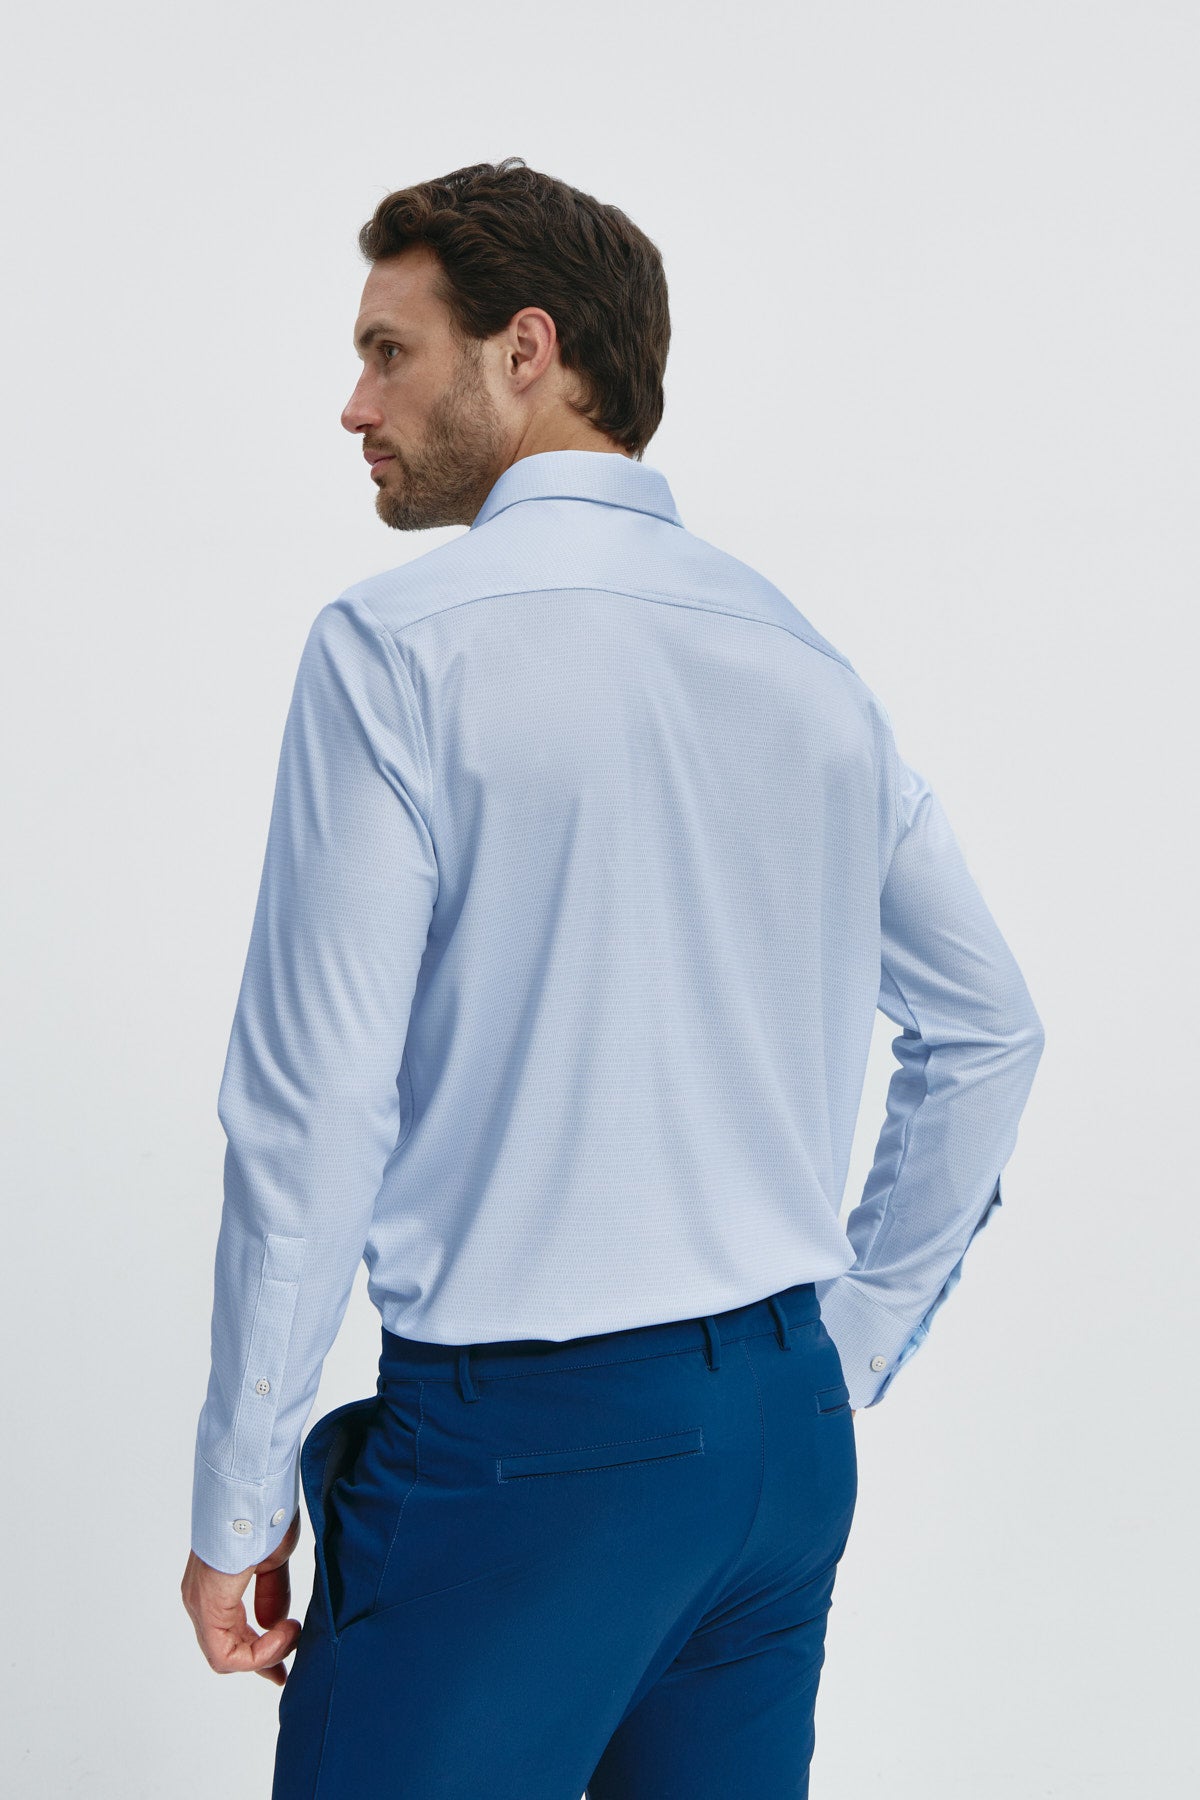 Camisa de vestir regular fit para hombre azul: Camisa de vestir regular fit para hombre en color azul, sin arrugas, antimanchas, elegante y cómoda. Foto de espalda.